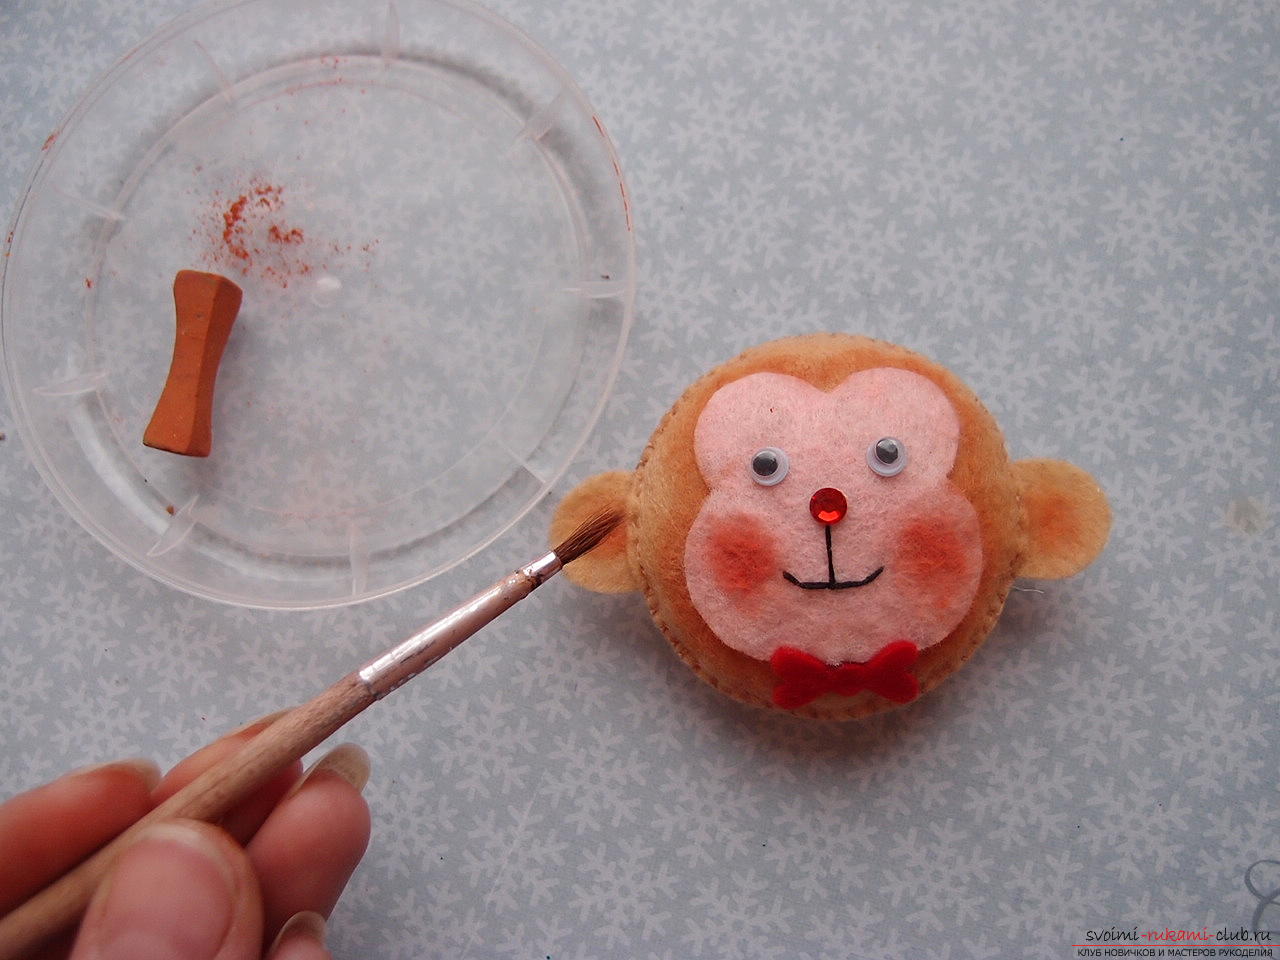 Этот мастер-класс научит как сделать игрушку из фетра - обезьянку.. Фото №14